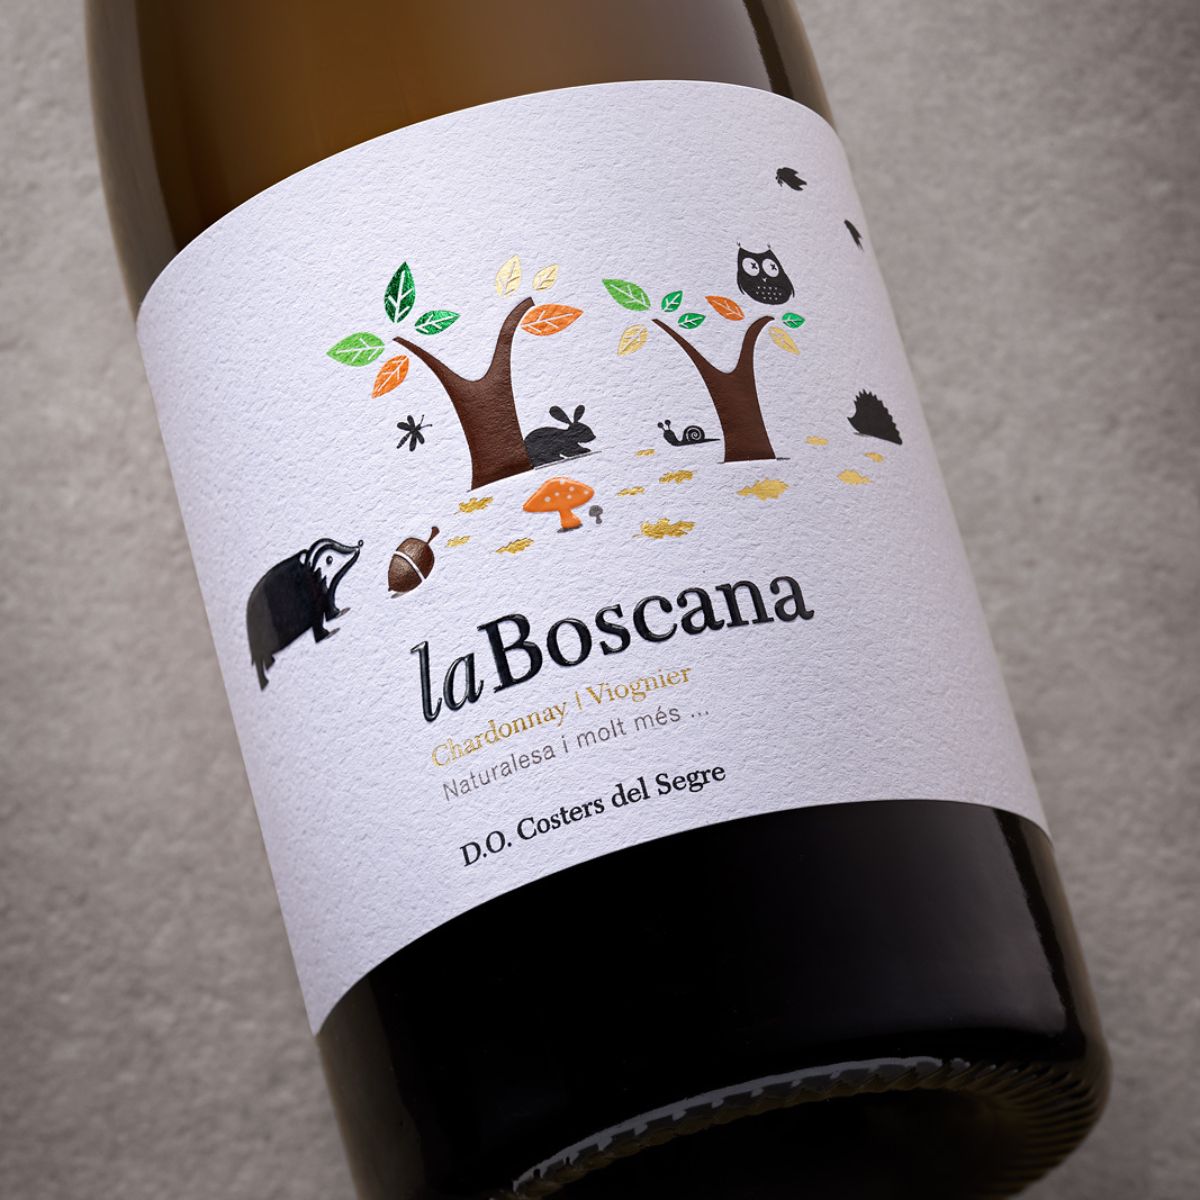 White wine La Boscana label | Costers del Sió Winery | D.O. Costers del Segre